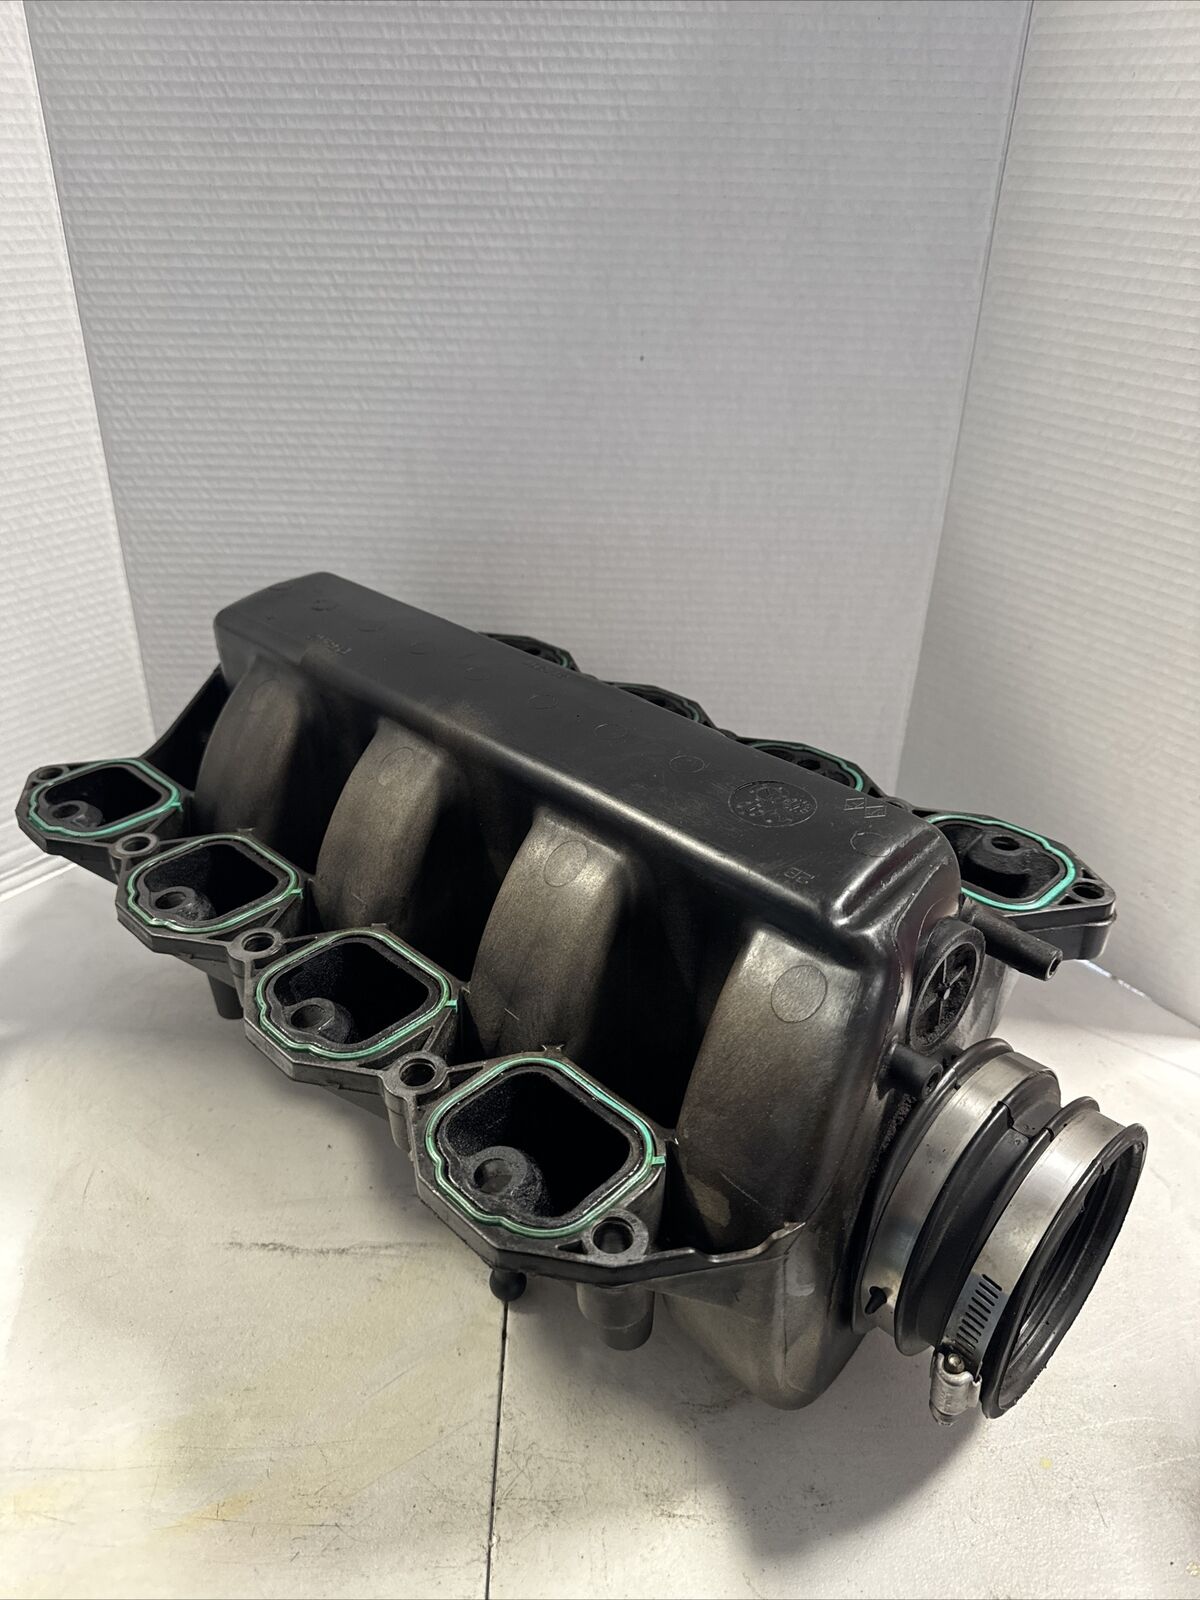 04-11 Cadillac XLR STS SRX DTS 4.6L V8 Engine Motor Air Intake Manifold OEM 69k